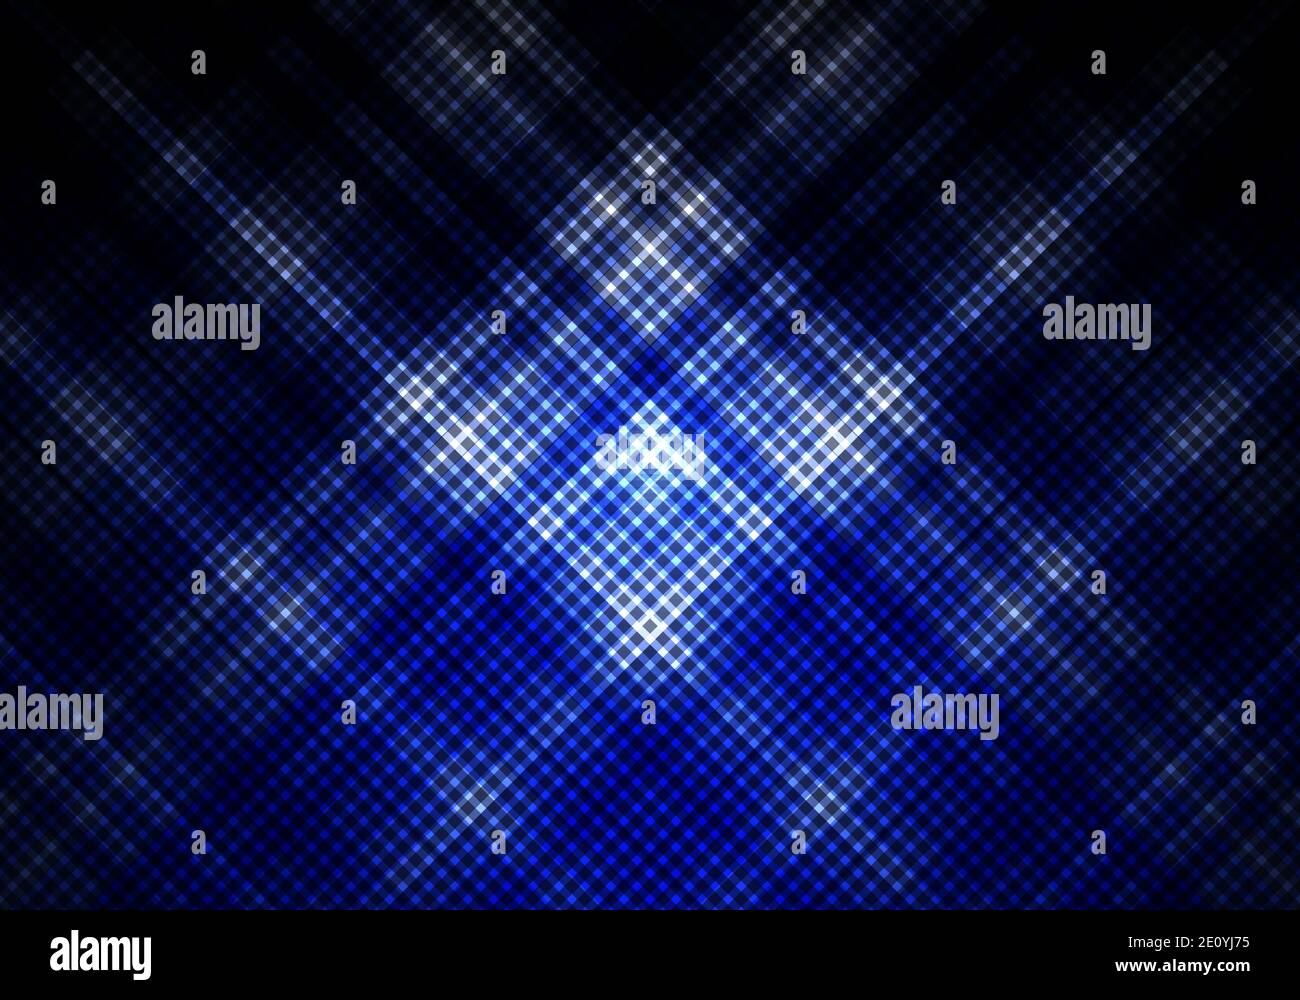 Arrière-plan abstrait bleu et noir avec bandes diagonales quadrillées. Répétition géométrique minimale. Vous pouvez utiliser pour la conception de couverture, la brochure, l'affiche, Illustration de Vecteur